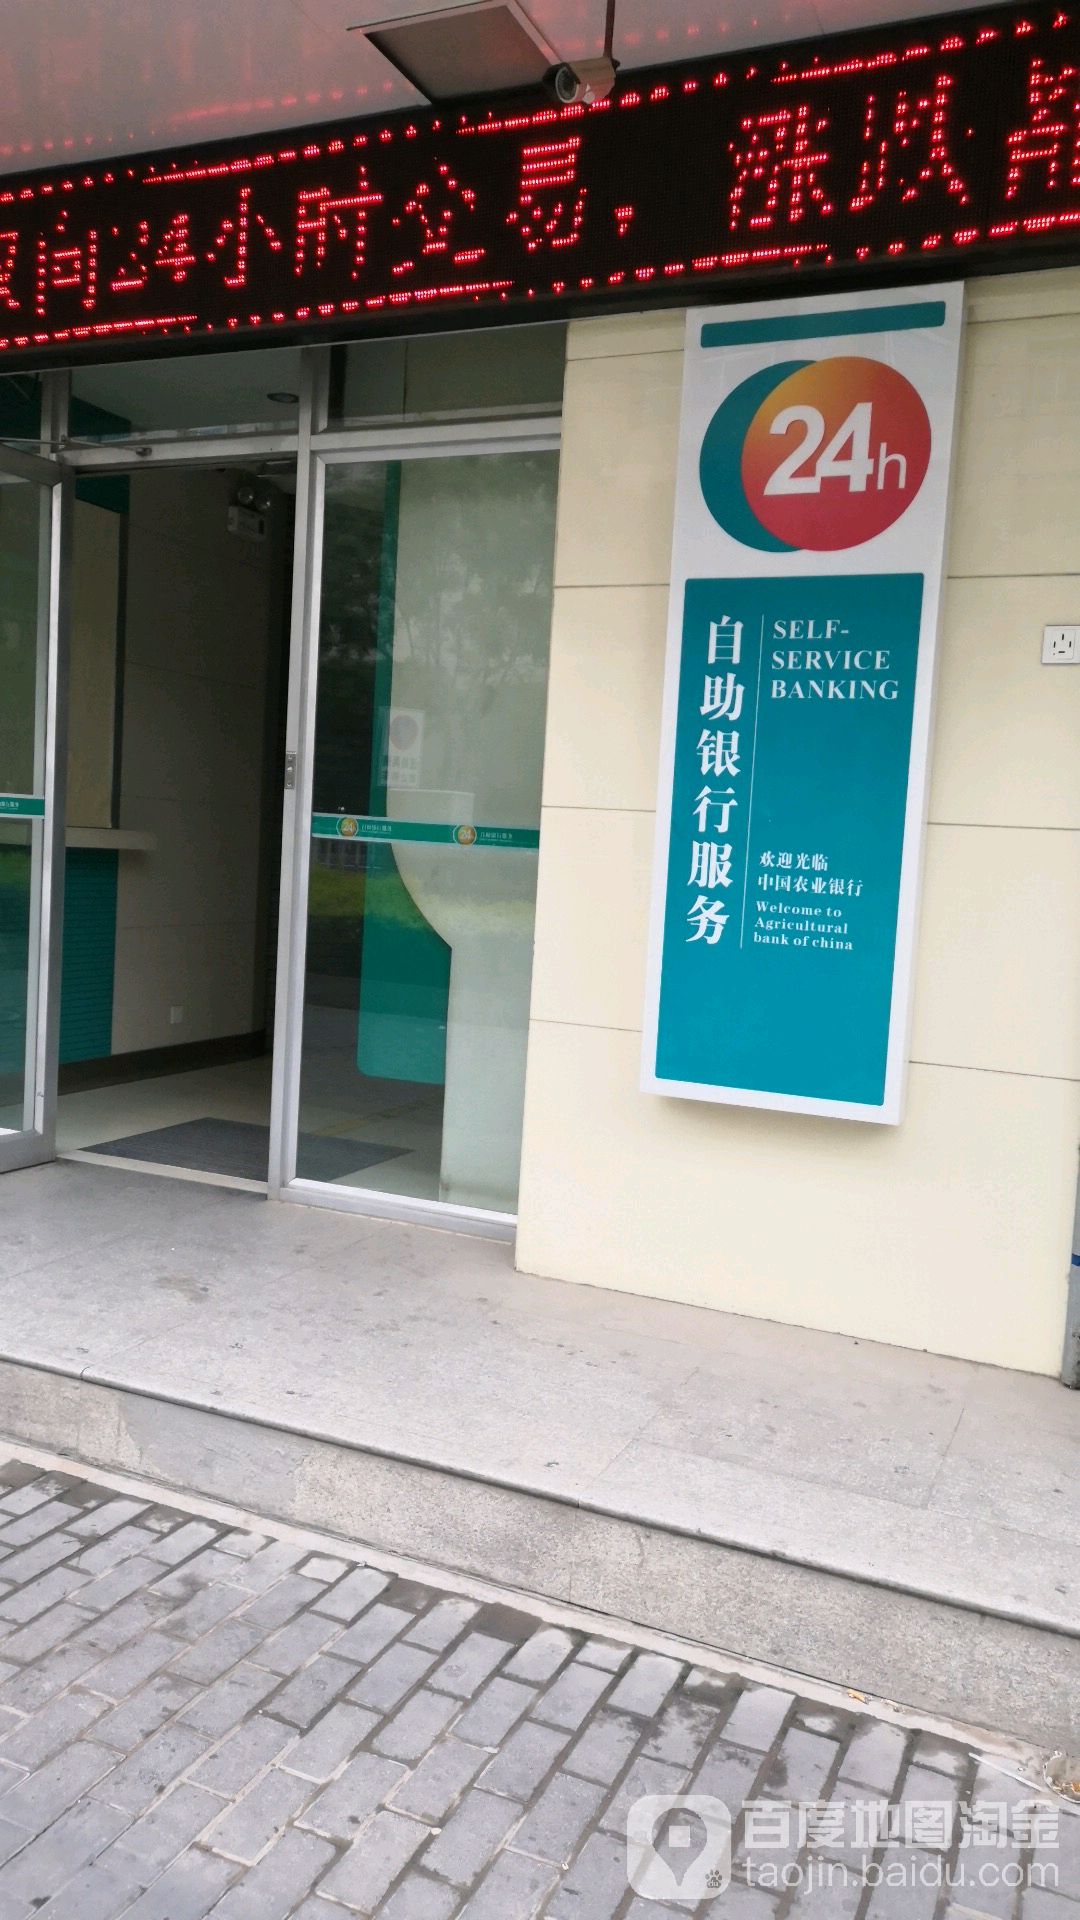 中国农业银行24小时自助银行(天水永庆路支行)